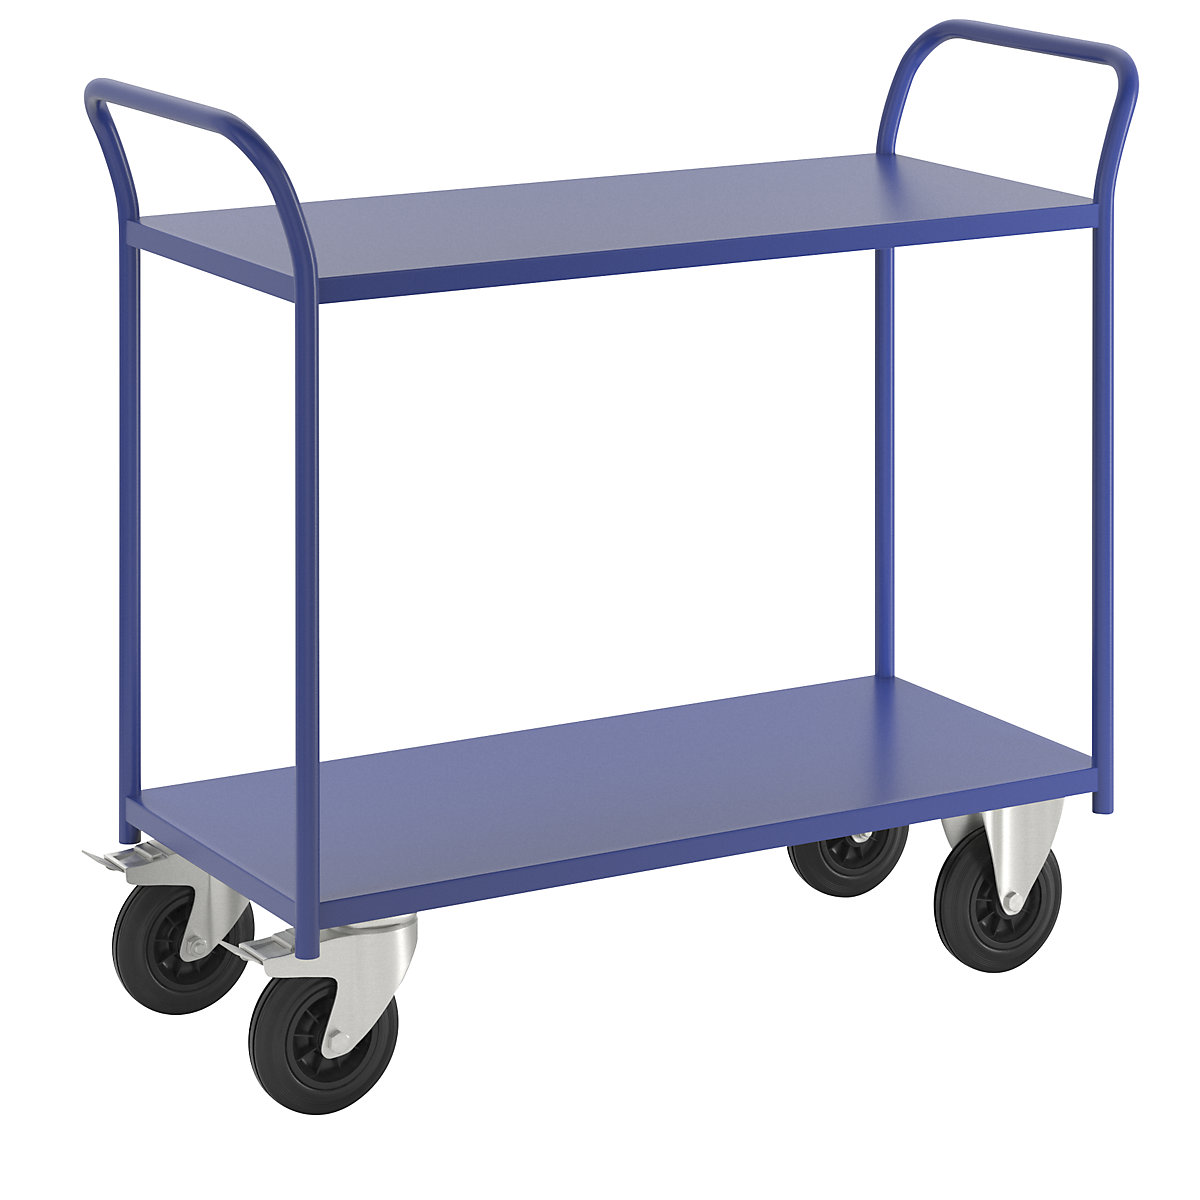 Stolový vozík KM41 – Kongamek, 2 etáže, d x š x v 1080 x 450 x 975 mm, modrá, 2 otočná kola s brzdou, 2 pevná kola-2